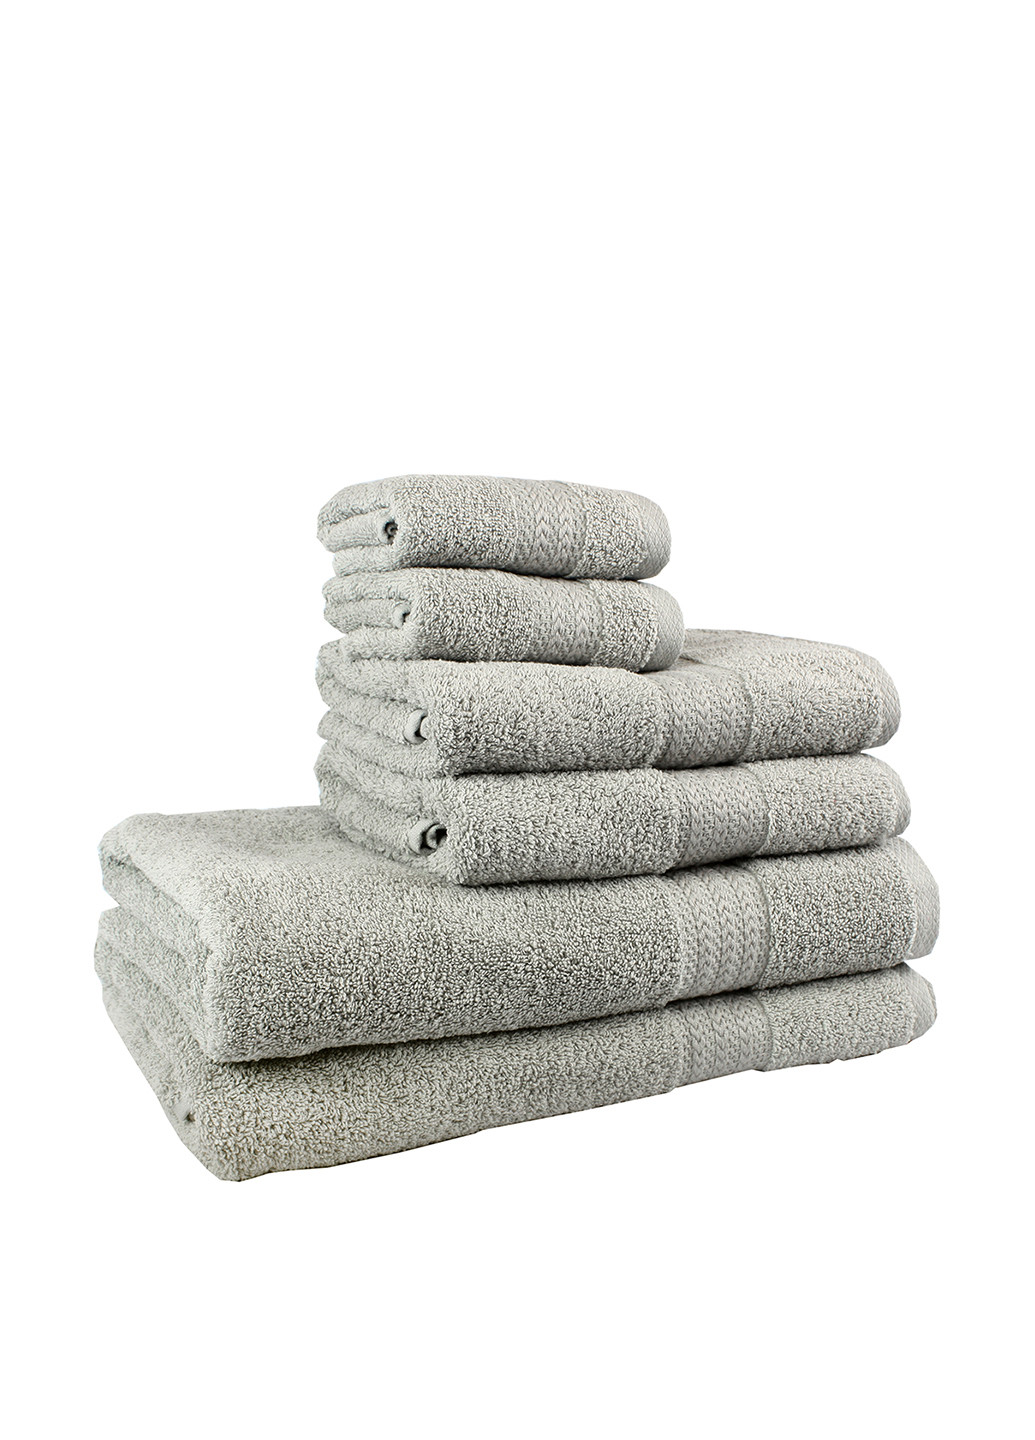 Hobby полотенце, 70х140 см полоска серый производство - Турция